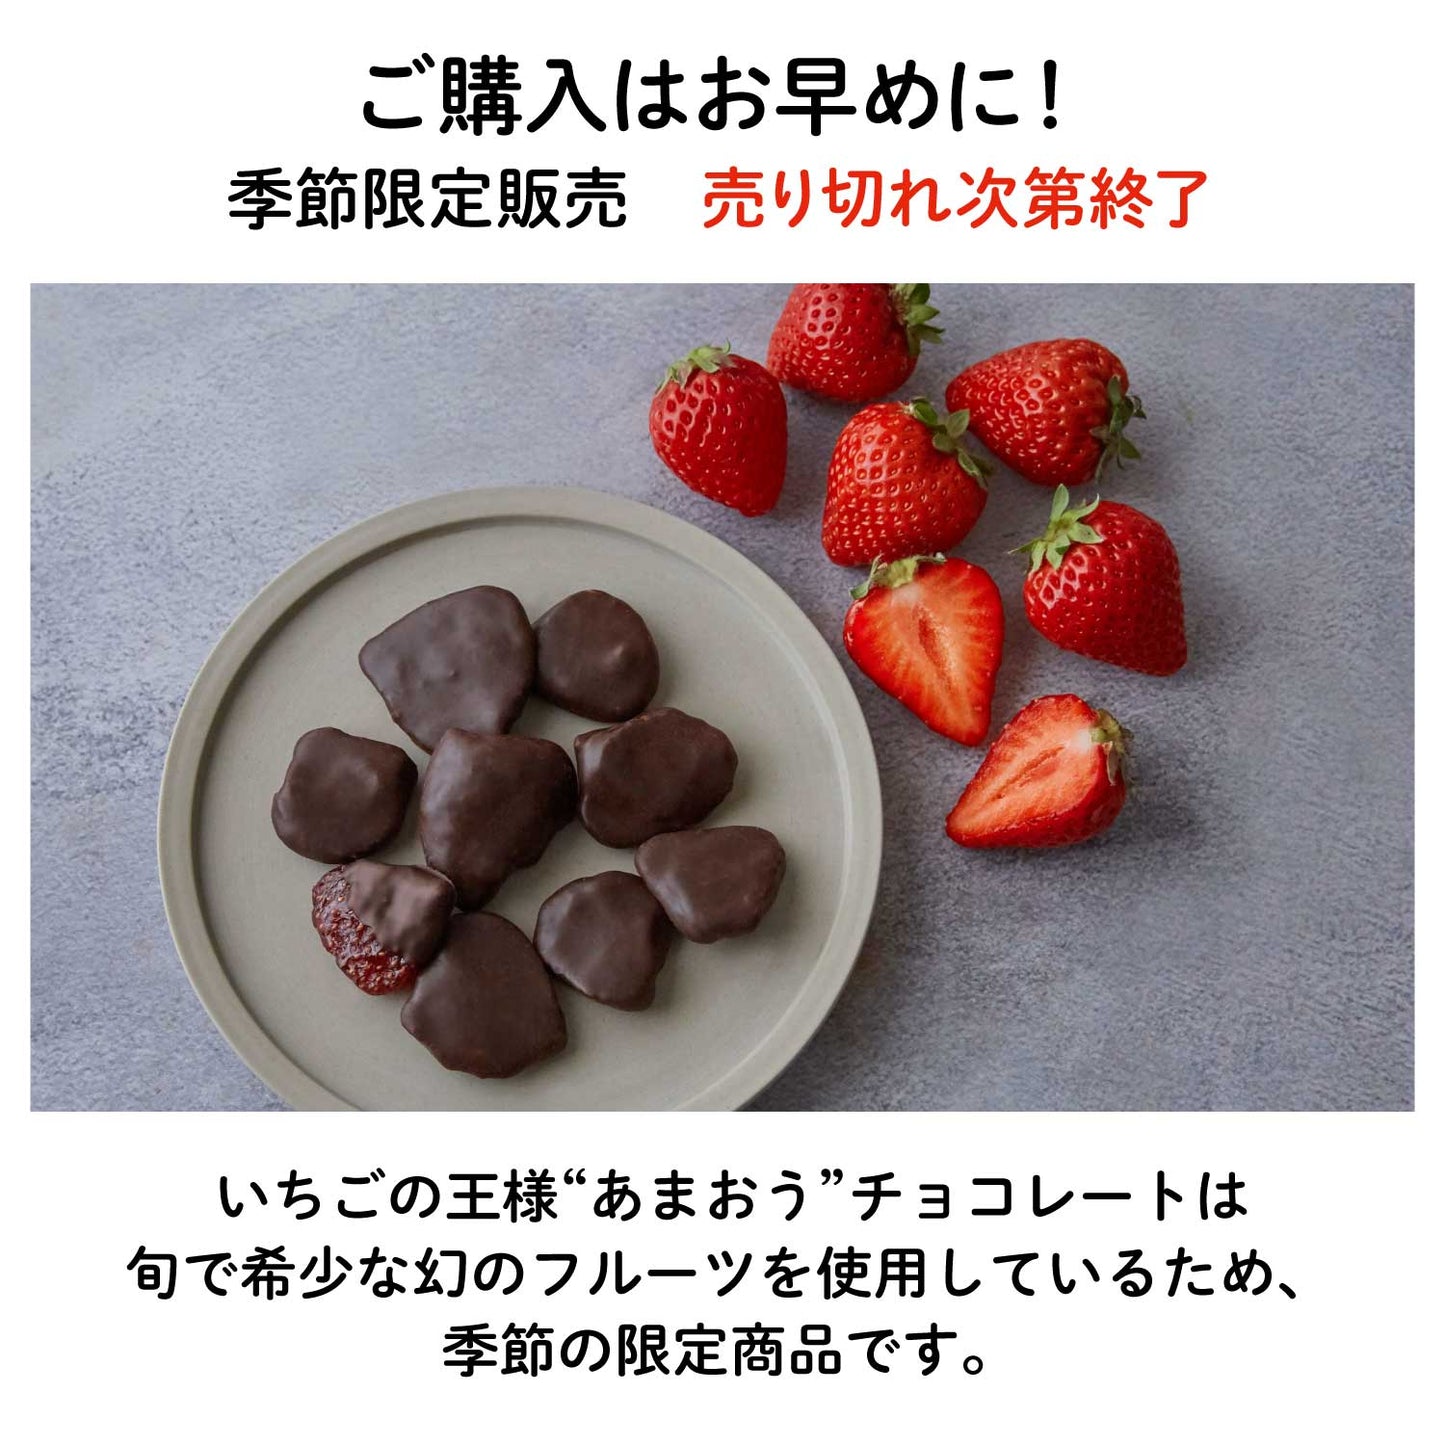 【NEW】いちごの王様"あまおう"フルーツチョコレート